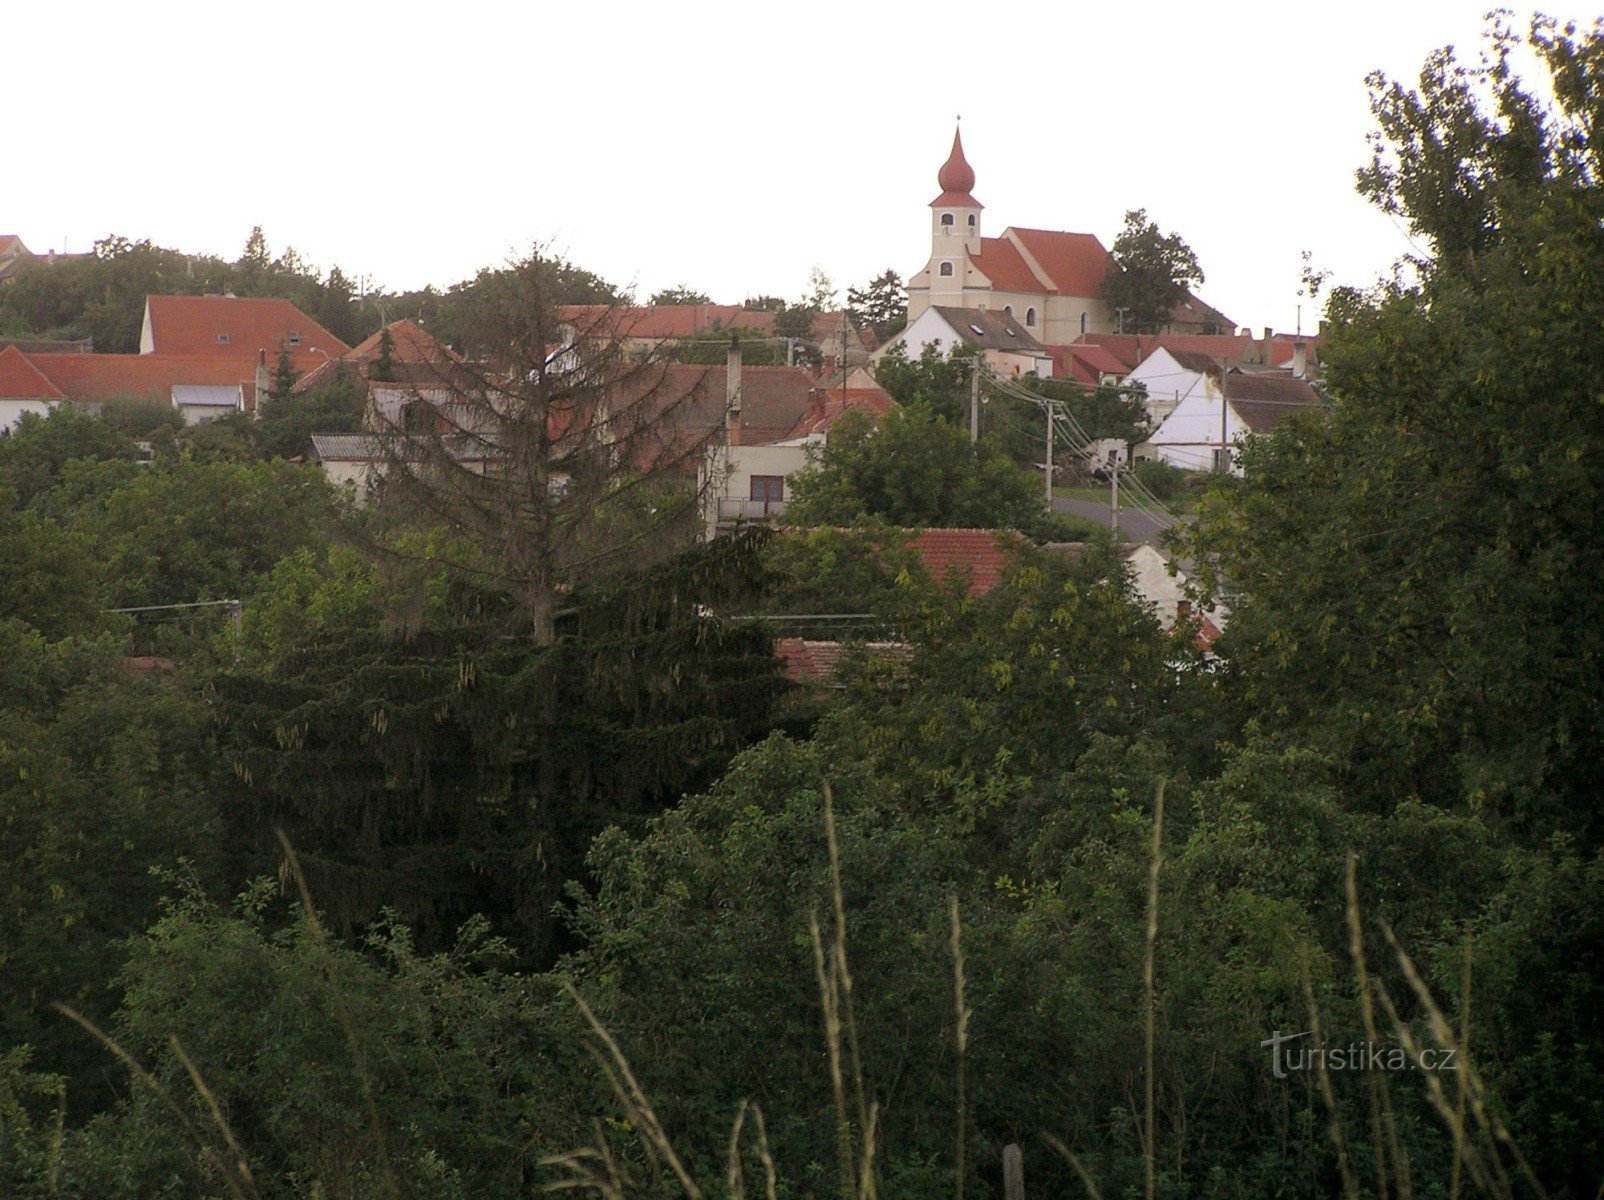 Pavlice from the road to Boskovštejn